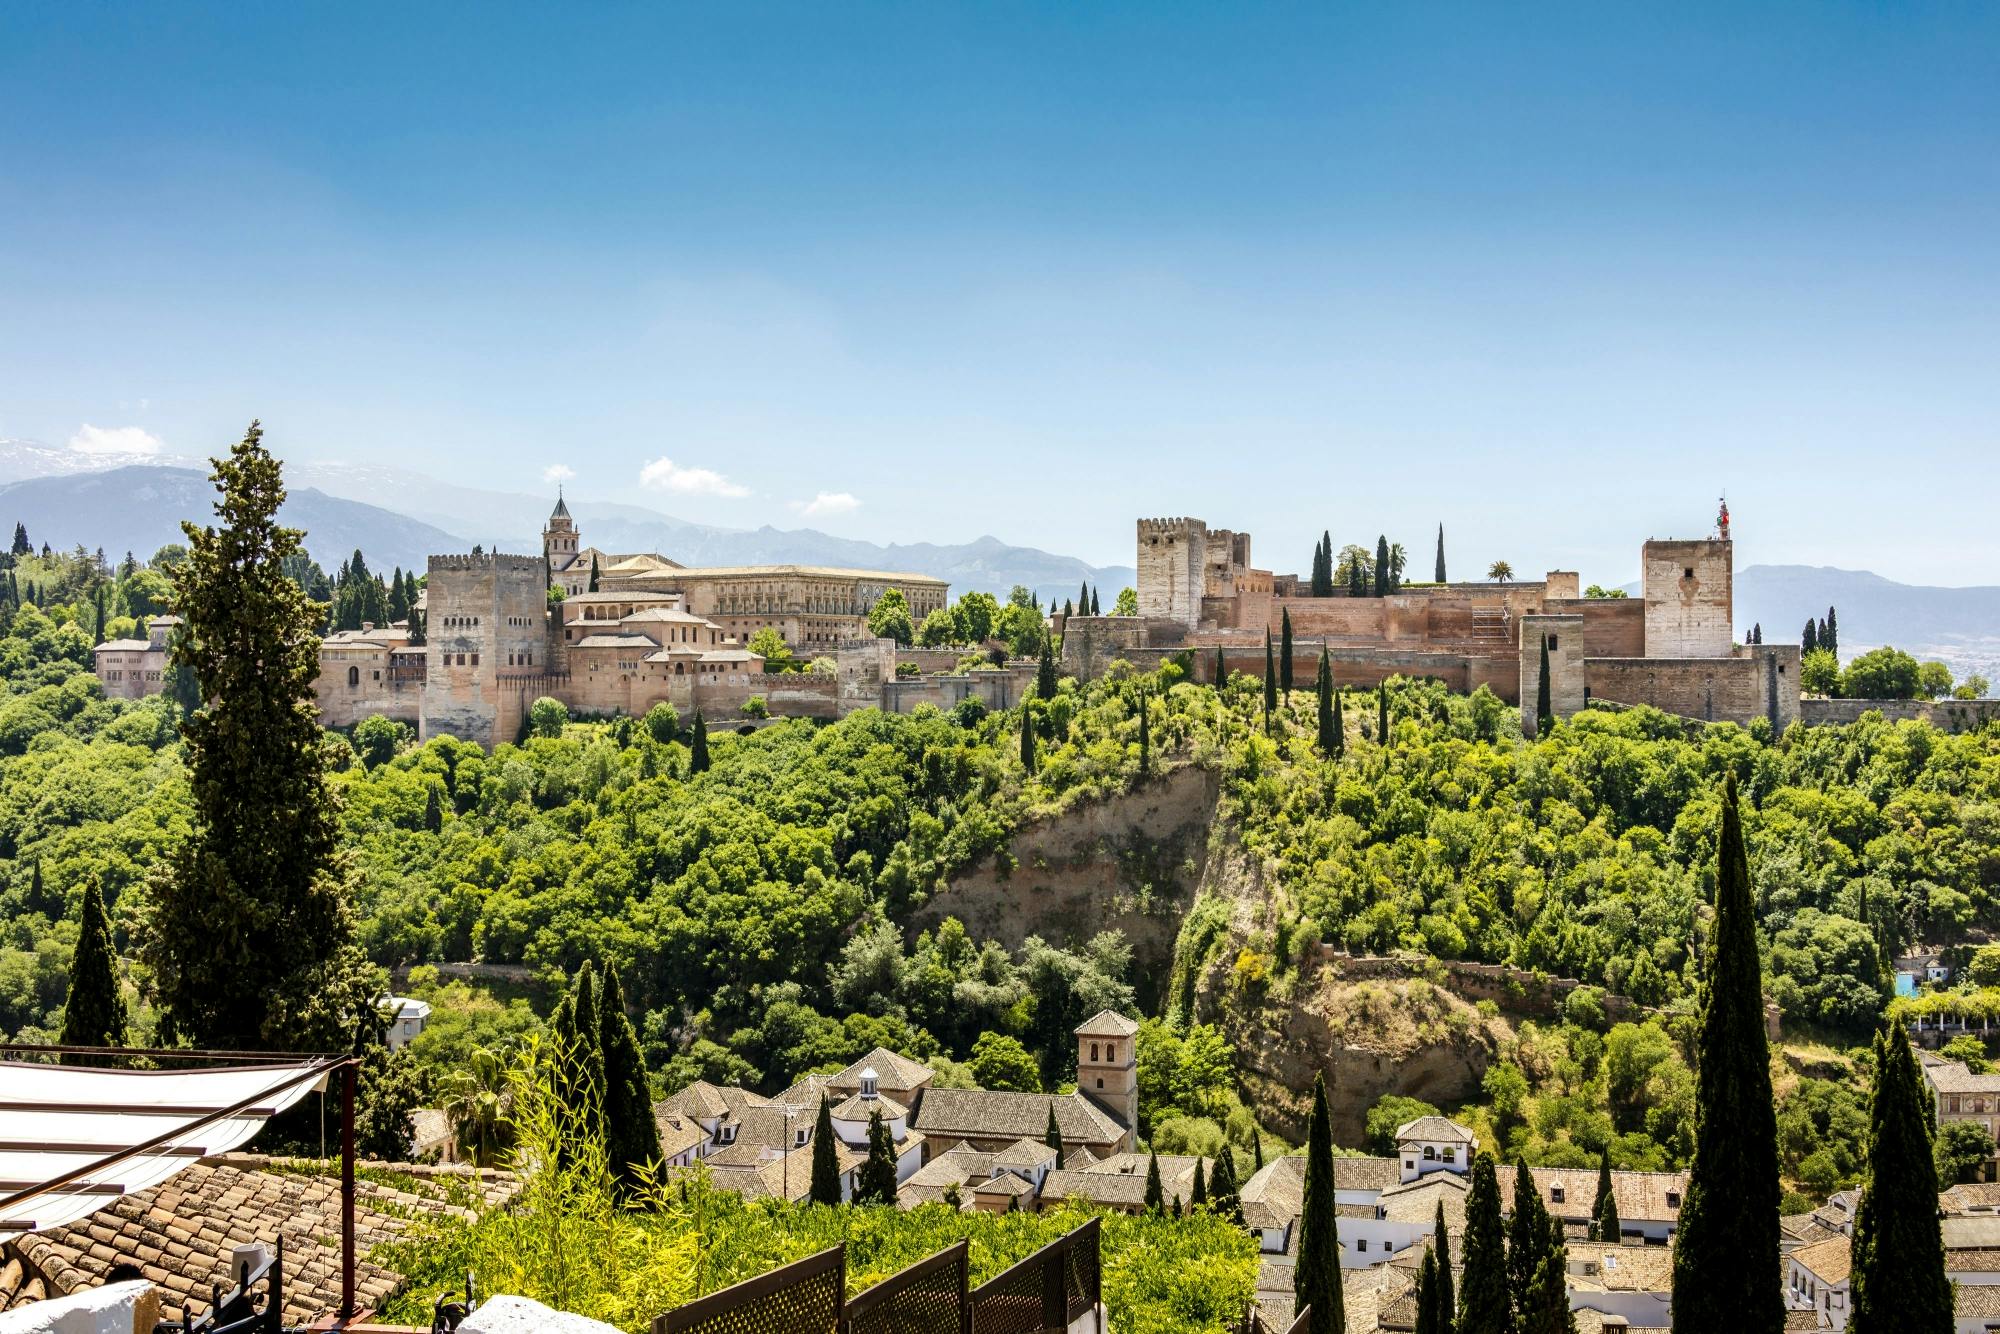 Bilety wstępu do Alhambry i Pałaców Nasrydów z pominięciem kolejki i oficjalną wycieczką z przewodnikiem